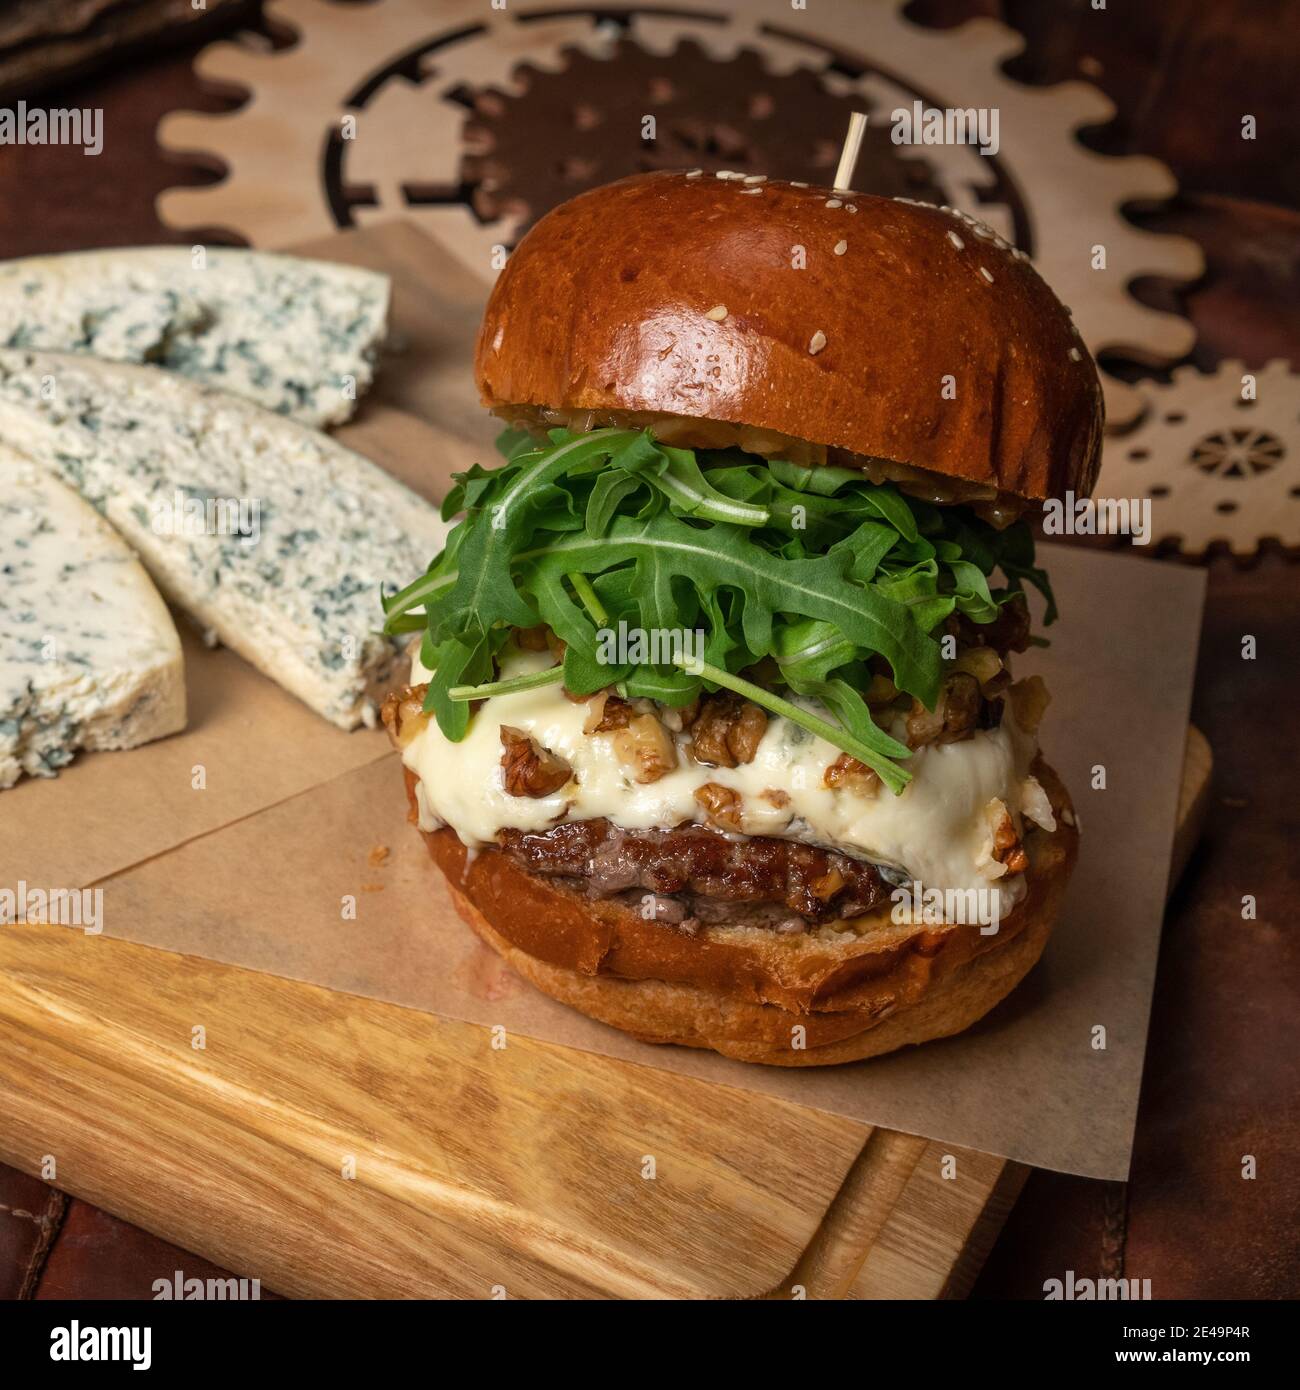 Hamburger di manzo fresco artigianale con insalata di rucola fresca e, fette di formaggio blu fresco adagiato accanto ad esso. Concetto di ristorante. Concetto di Street food Foto Stock